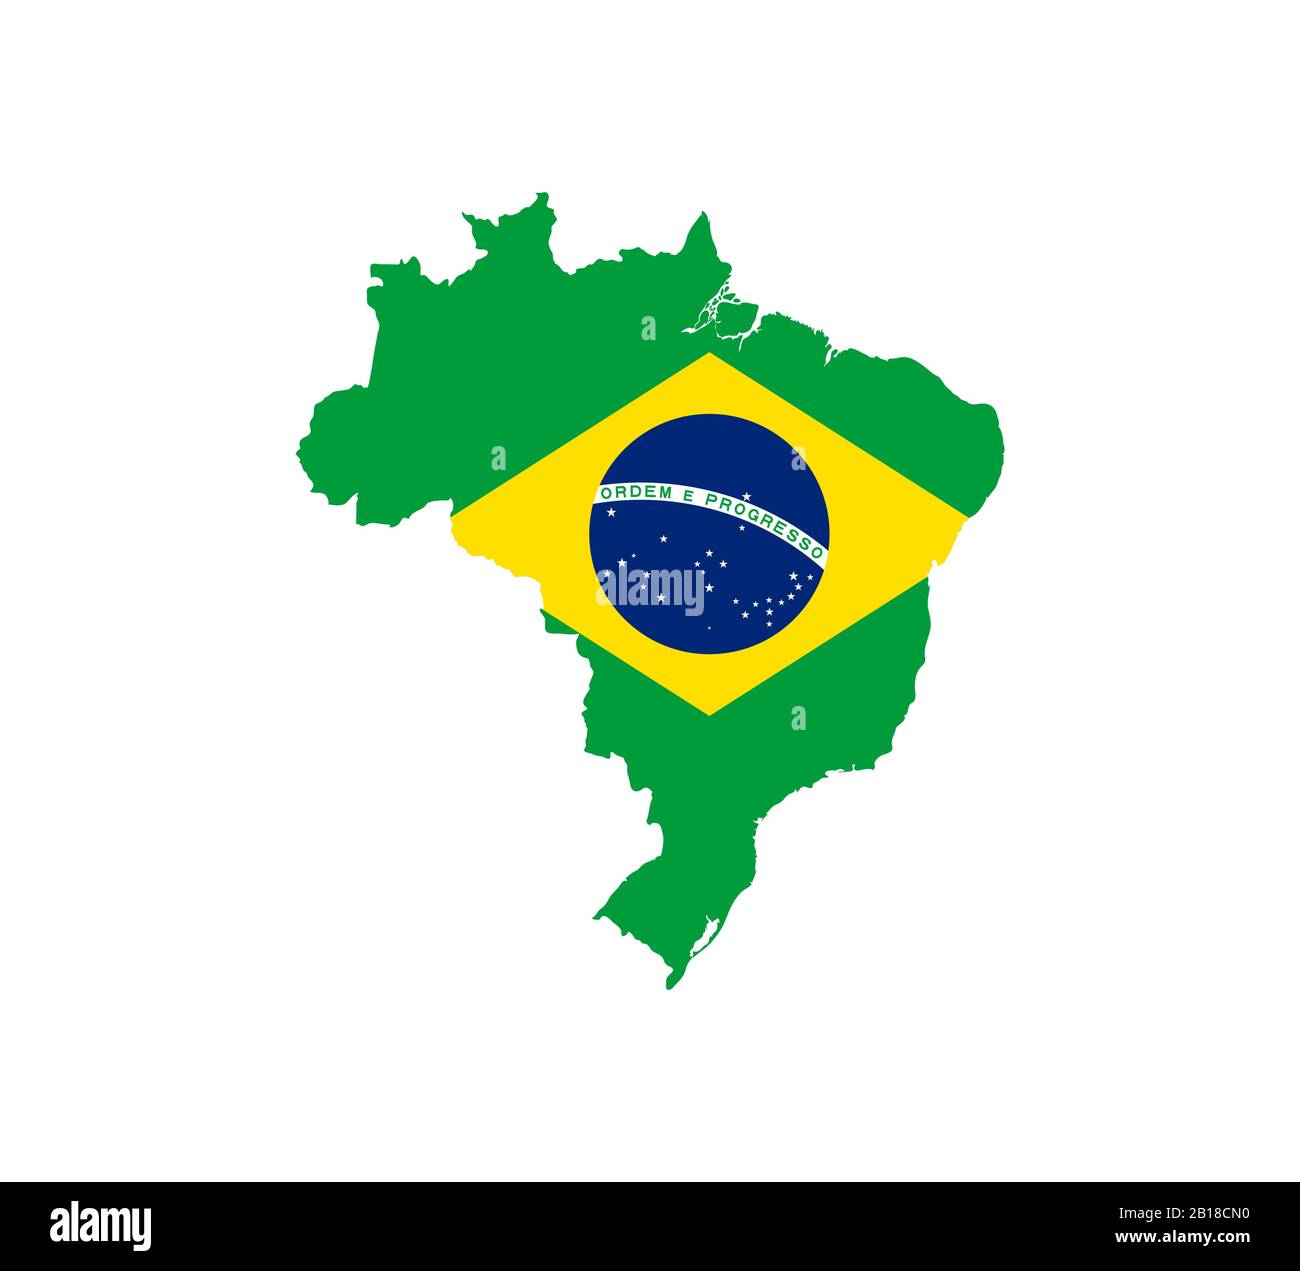 Carte du Brésil, drapeau. Illustration vectorielle, conception plate. Illustration de Vecteur